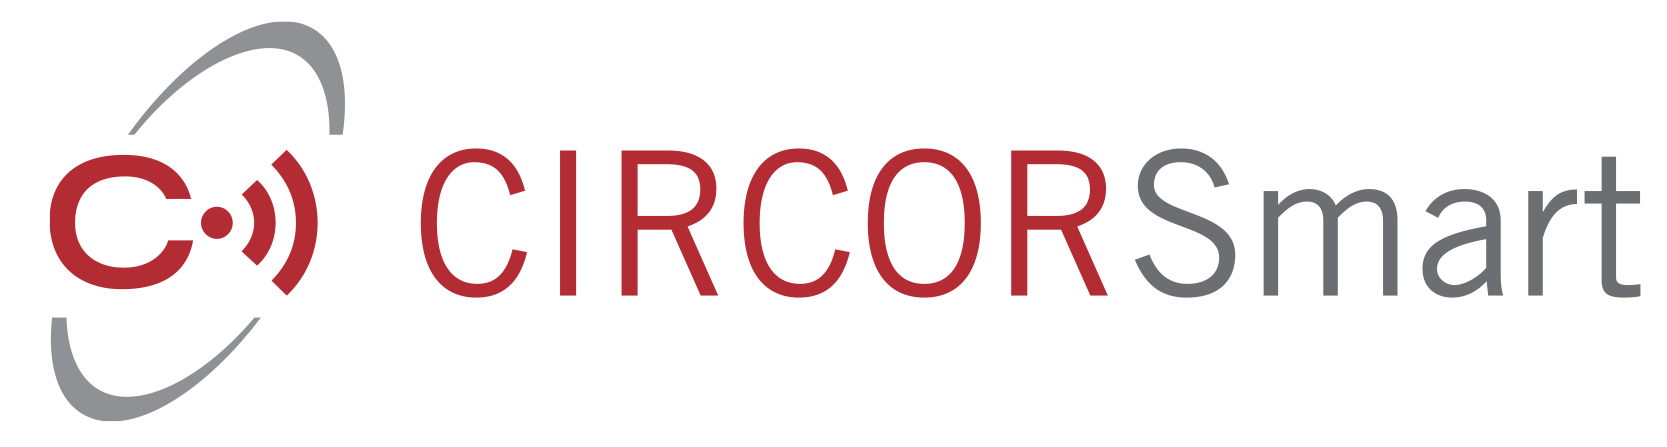 circor smart app logo med